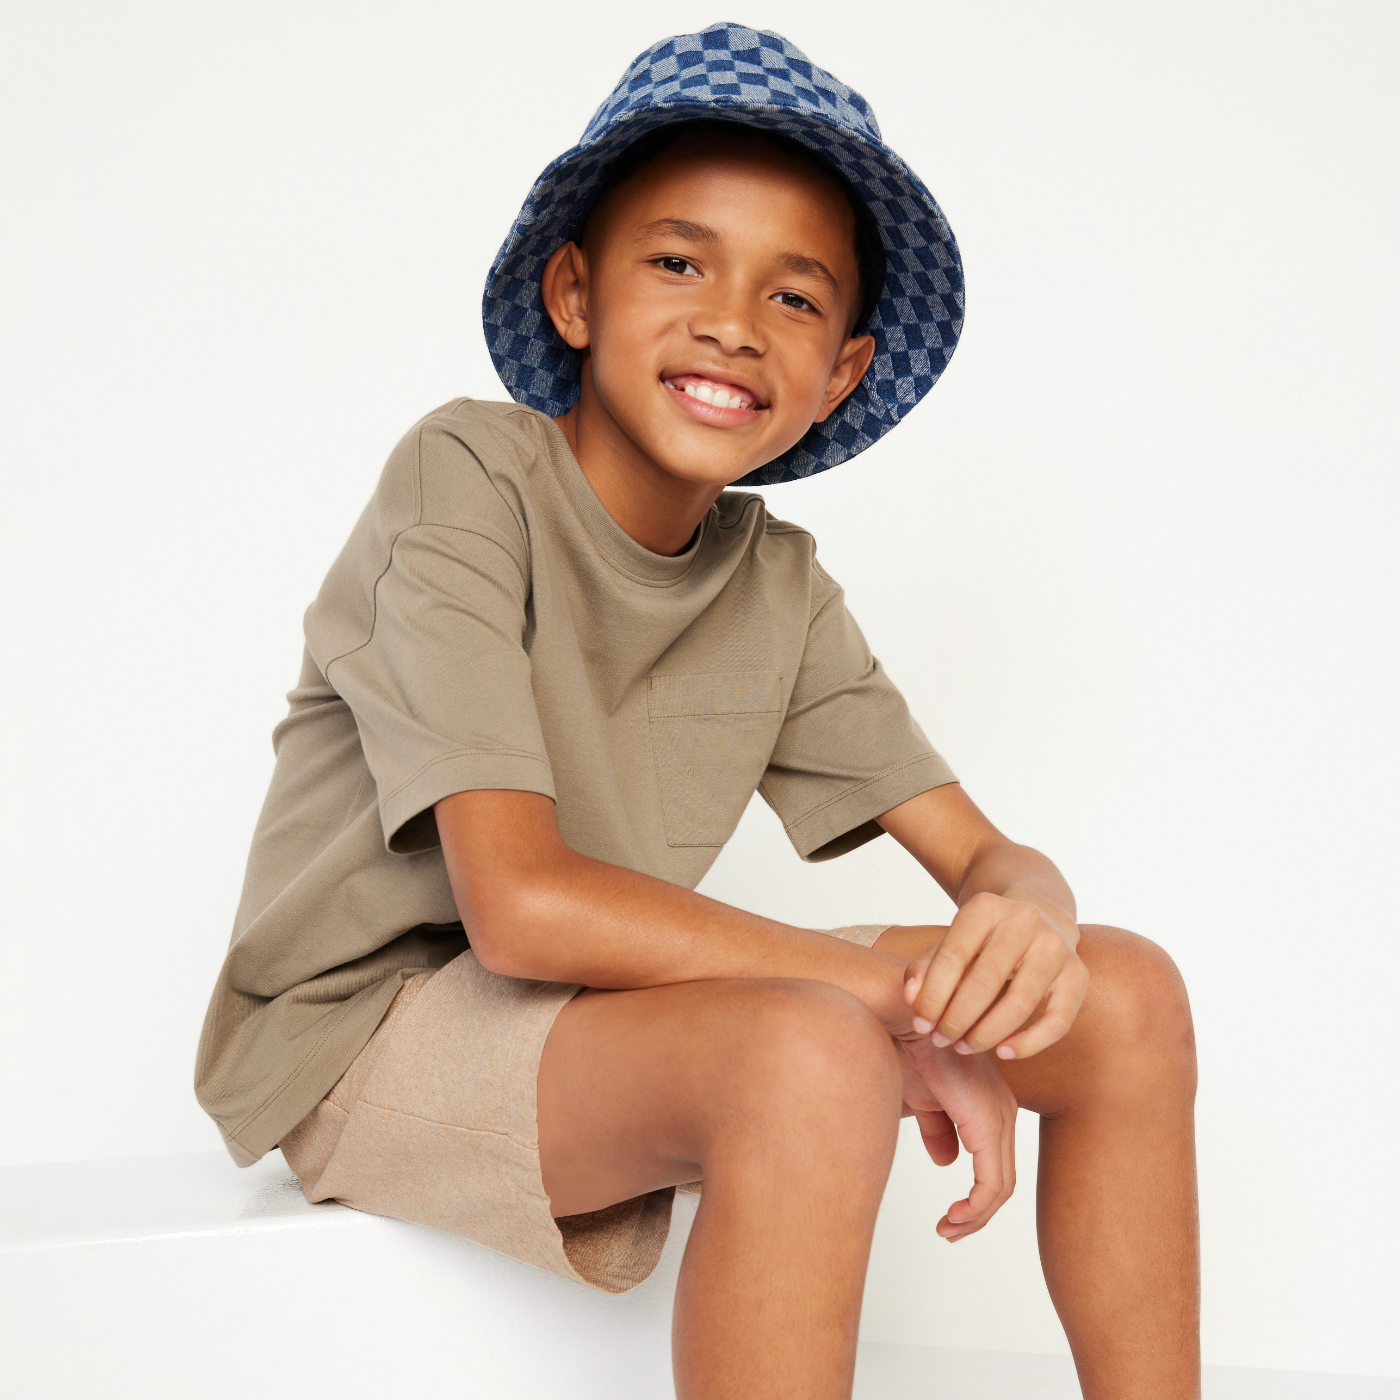 Un jeune garçon porte un t-shirt havane et un short beige foncé avec un chapeau cloche à carreaux.